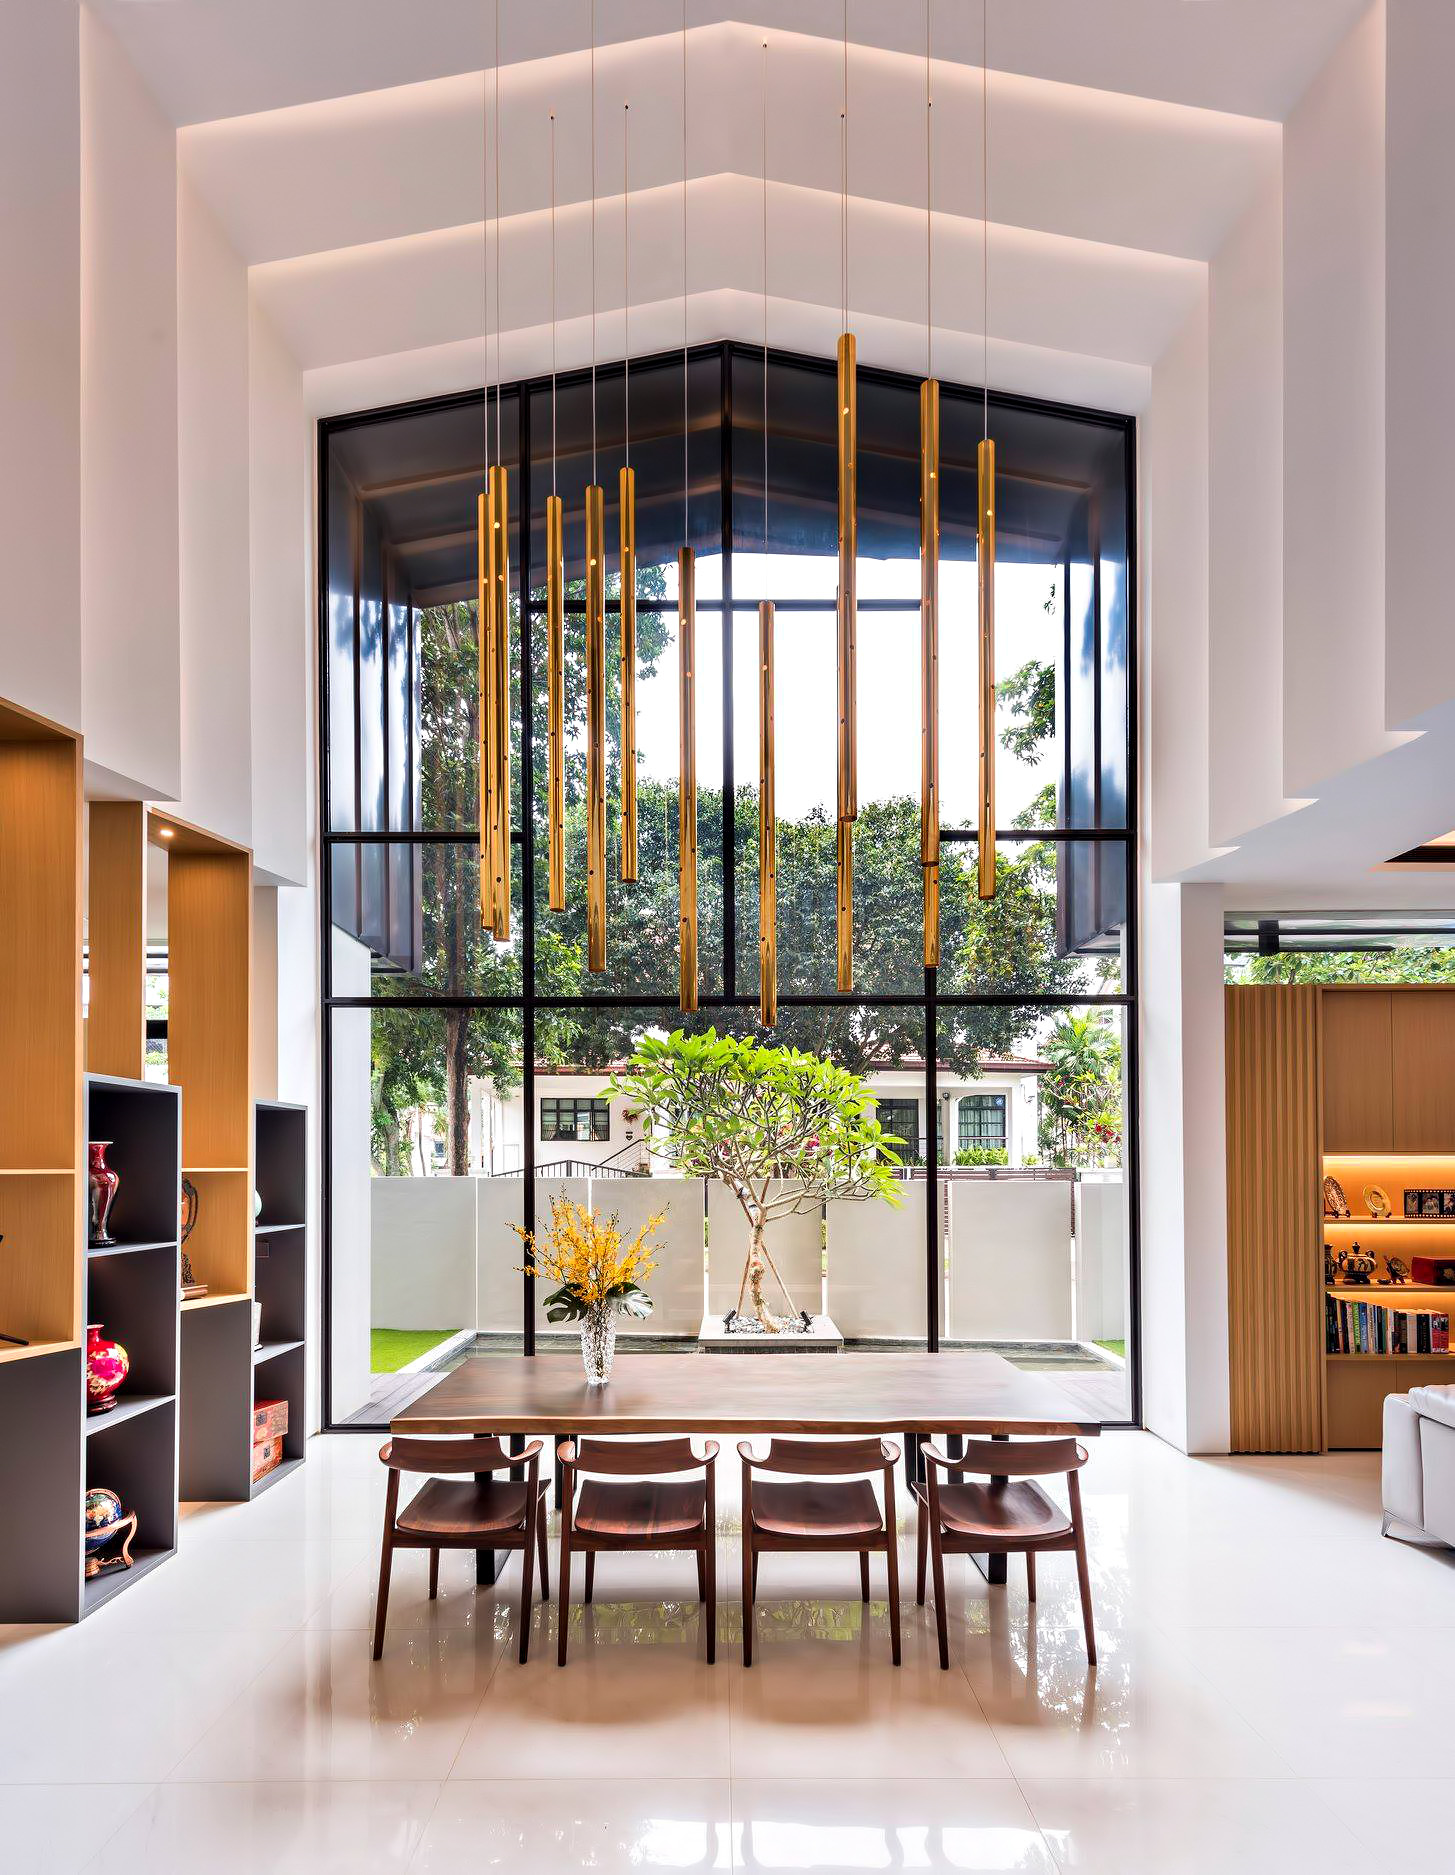 The Loft House Luxury Residence – Namly Place, Singapore